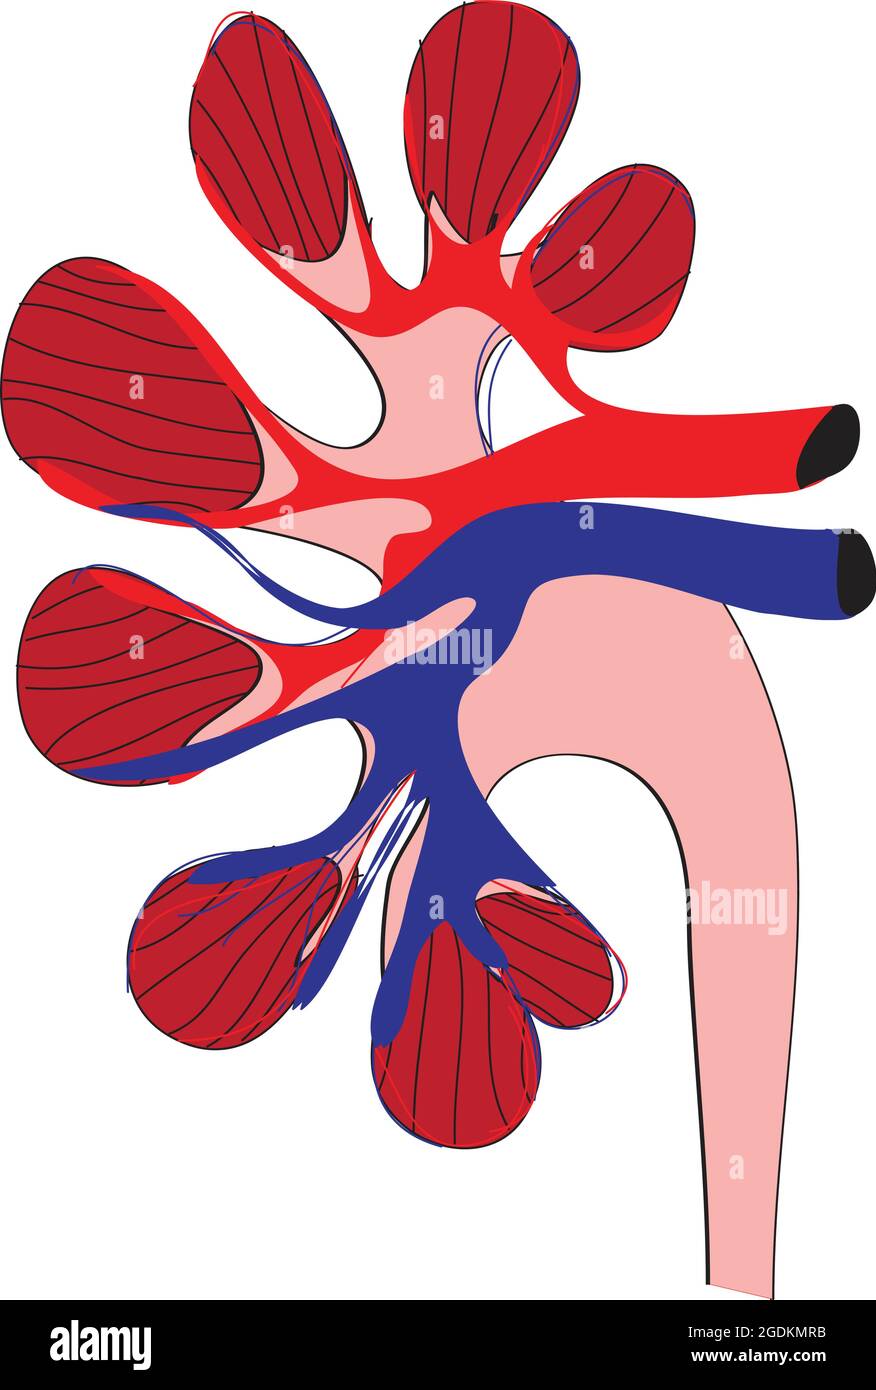 All'interno dell'area del sangue di un rene umano, l'apporto di sangue di rene umano, le arterie renali, che derivano direttamente dall'aorta addominale, arte mesenterica superiore Illustrazione Vettoriale